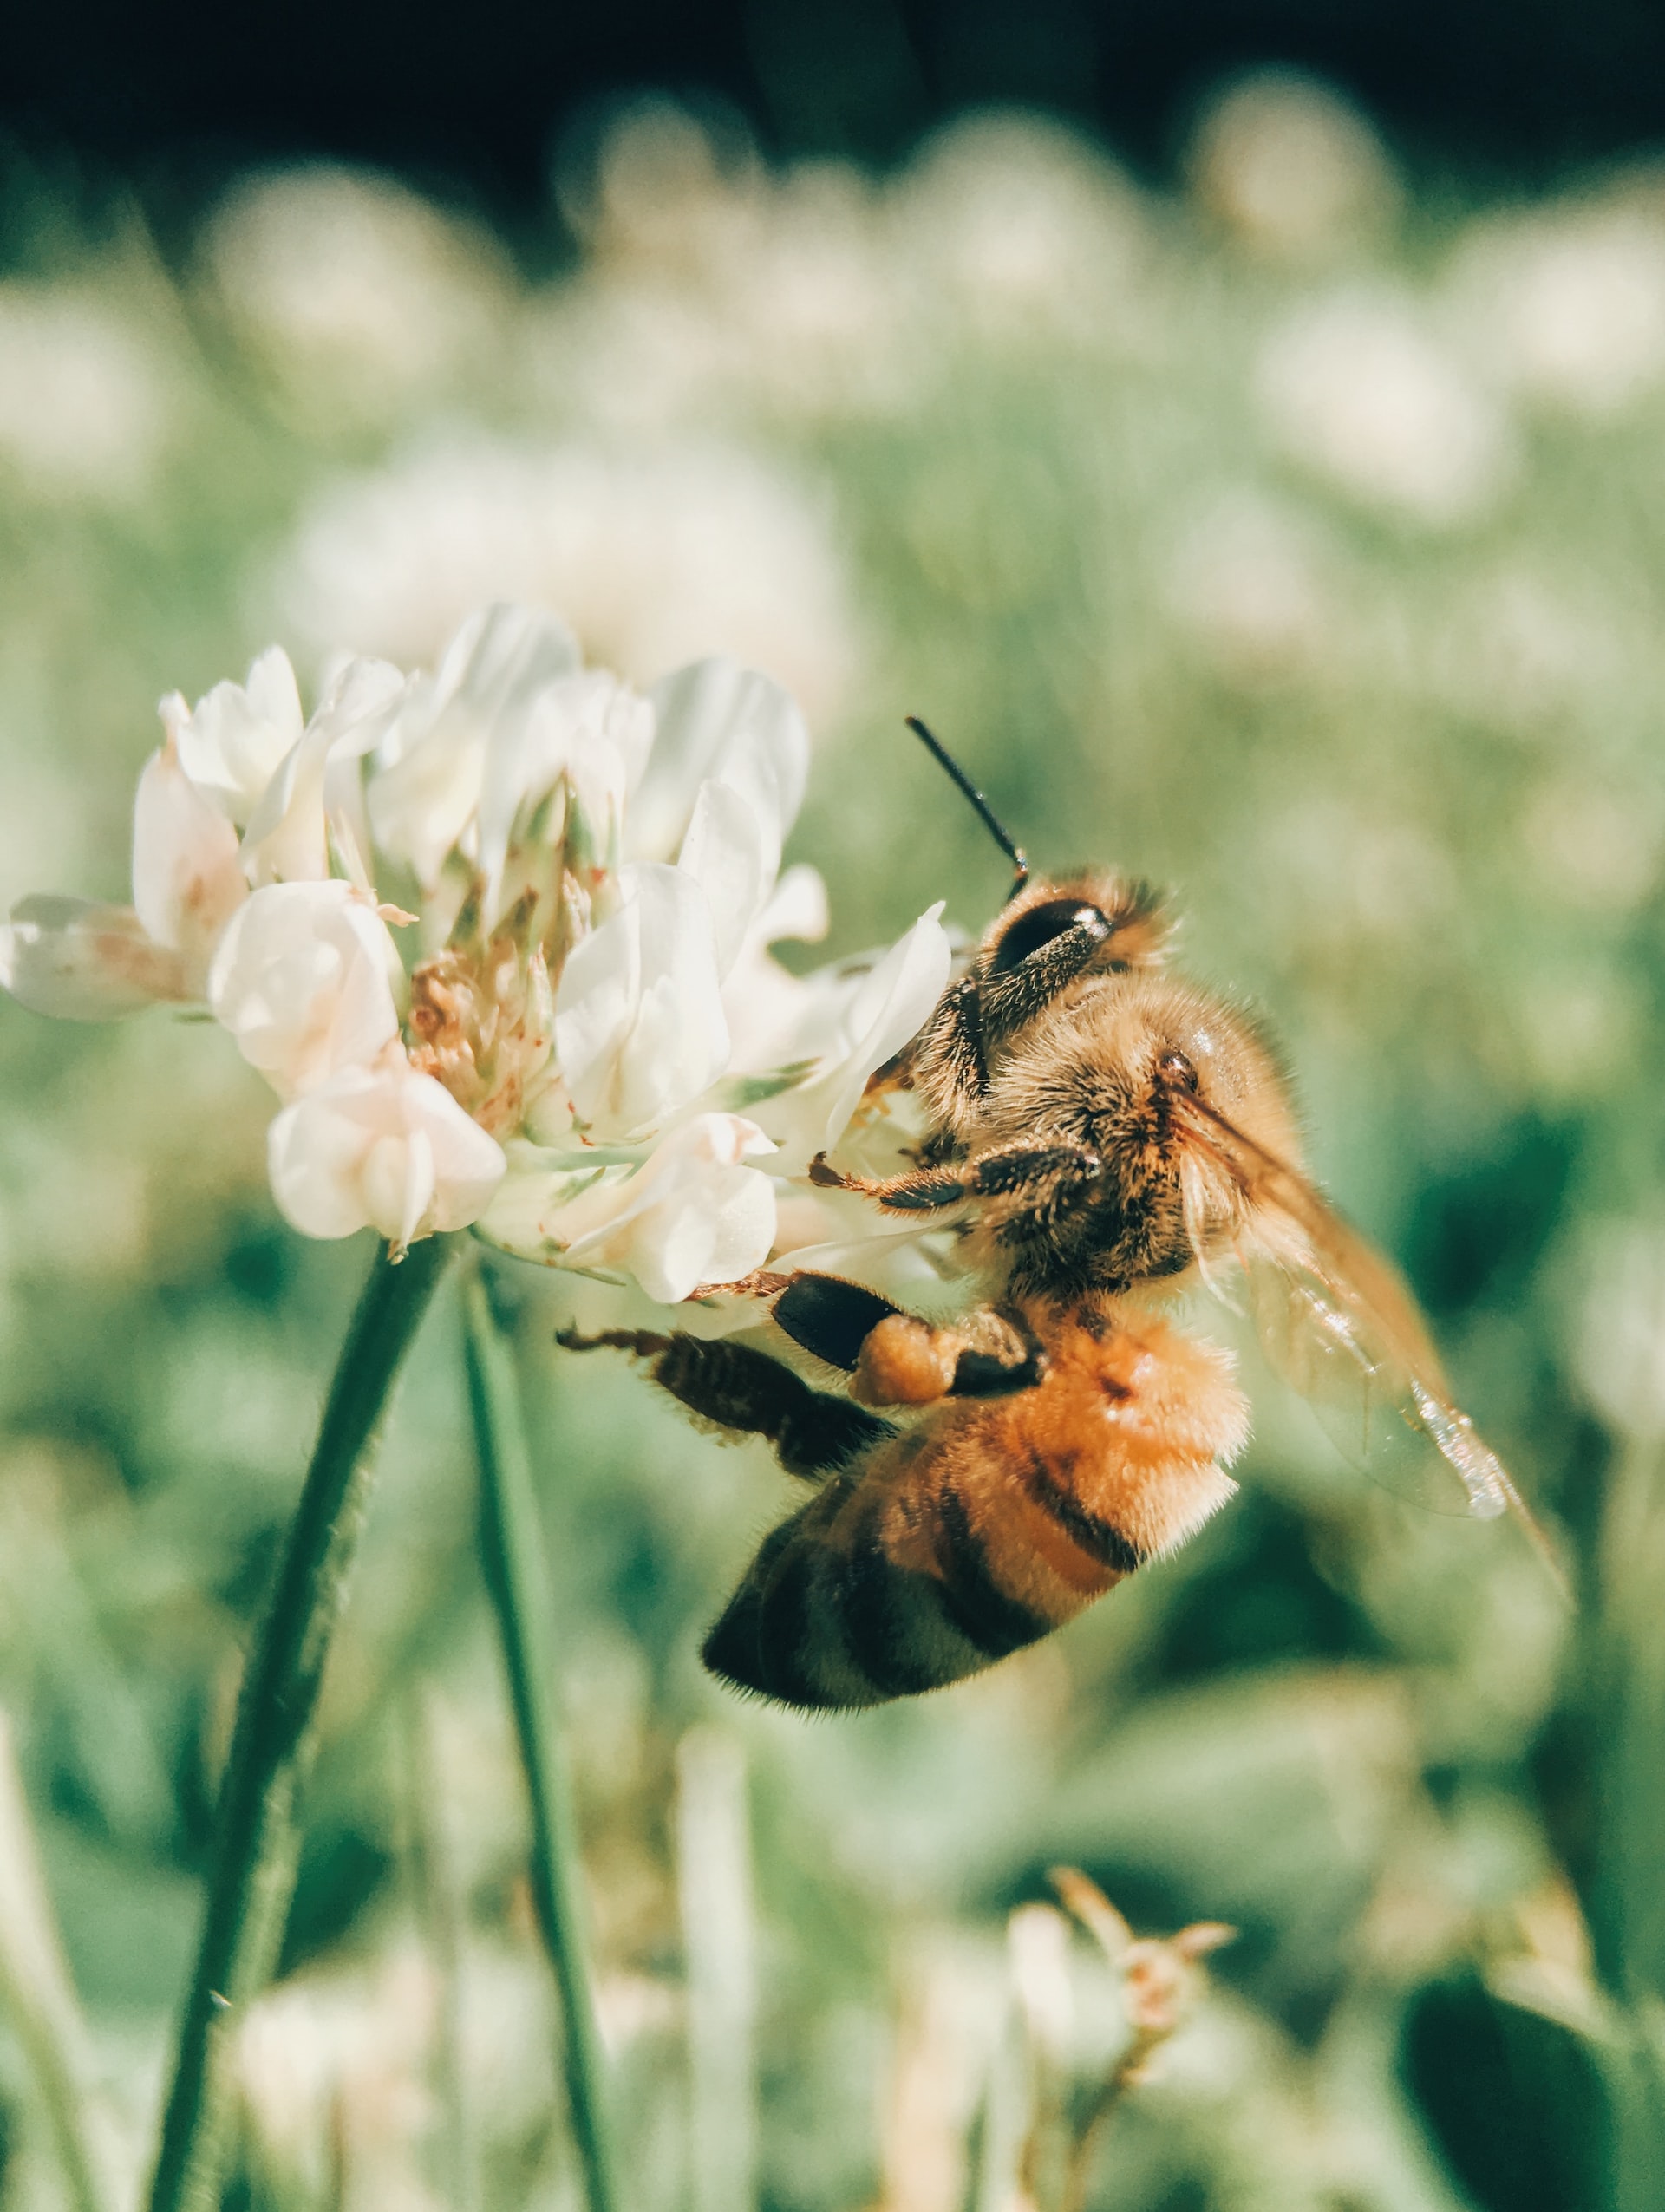 Το δηλητήριο της μέλισσας μπορεί να θεραπεύσει τον καρκίνο του μαστού, σύμφωνα με έρευνα